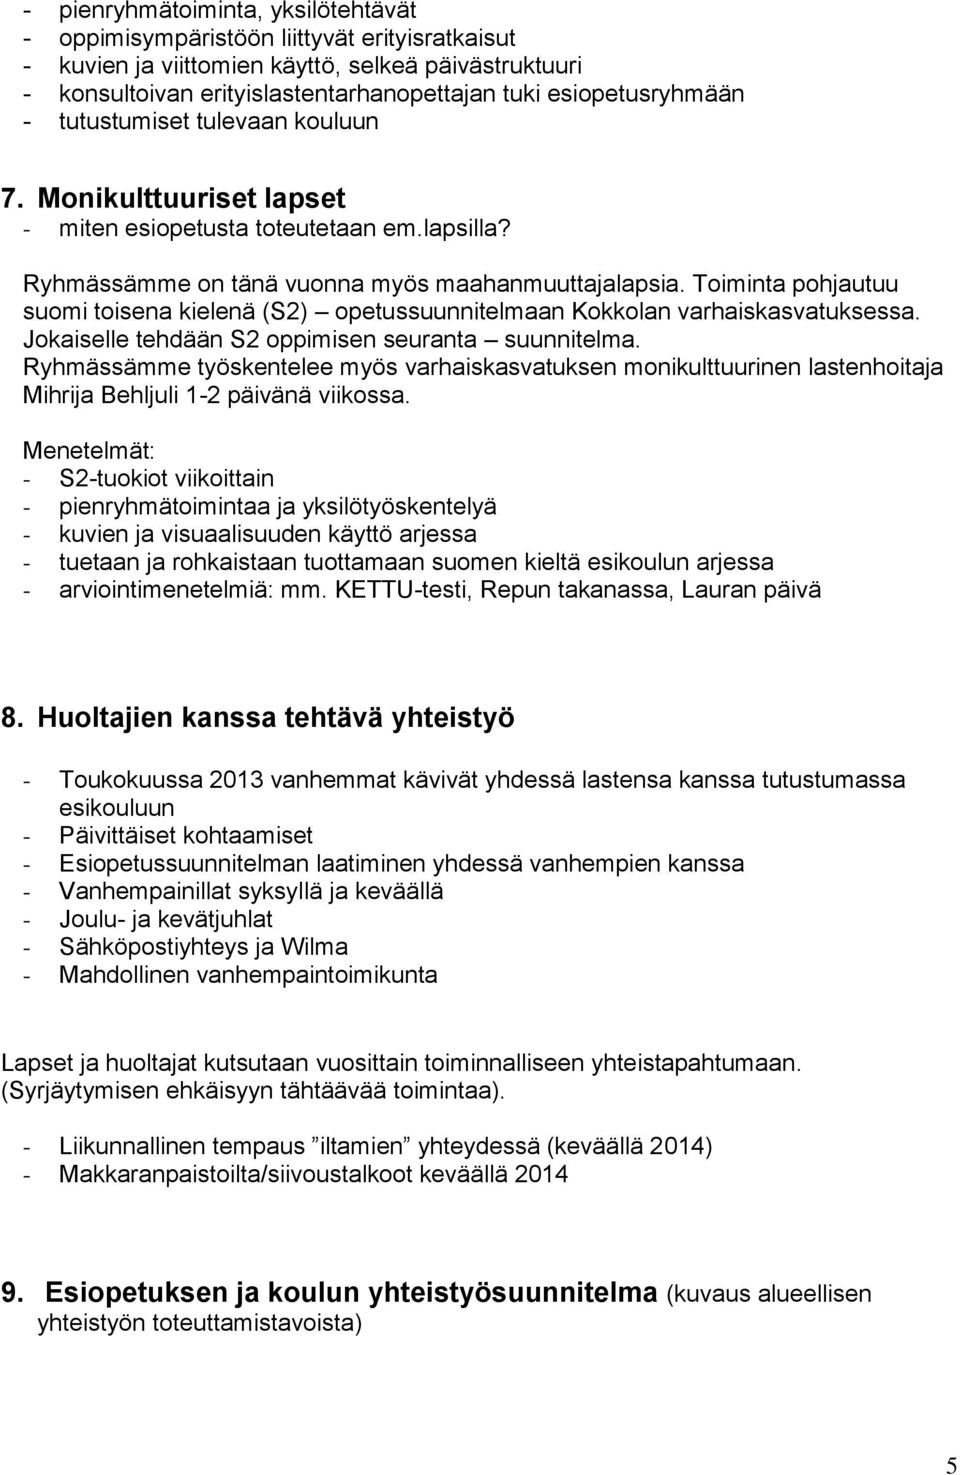 Toiminta pohjautuu suomi toisena kielenä (S2) opetussuunnitelmaan Kokkolan varhaiskasvatuksessa. Jokaiselle tehdään S2 oppimisen seuranta suunnitelma.